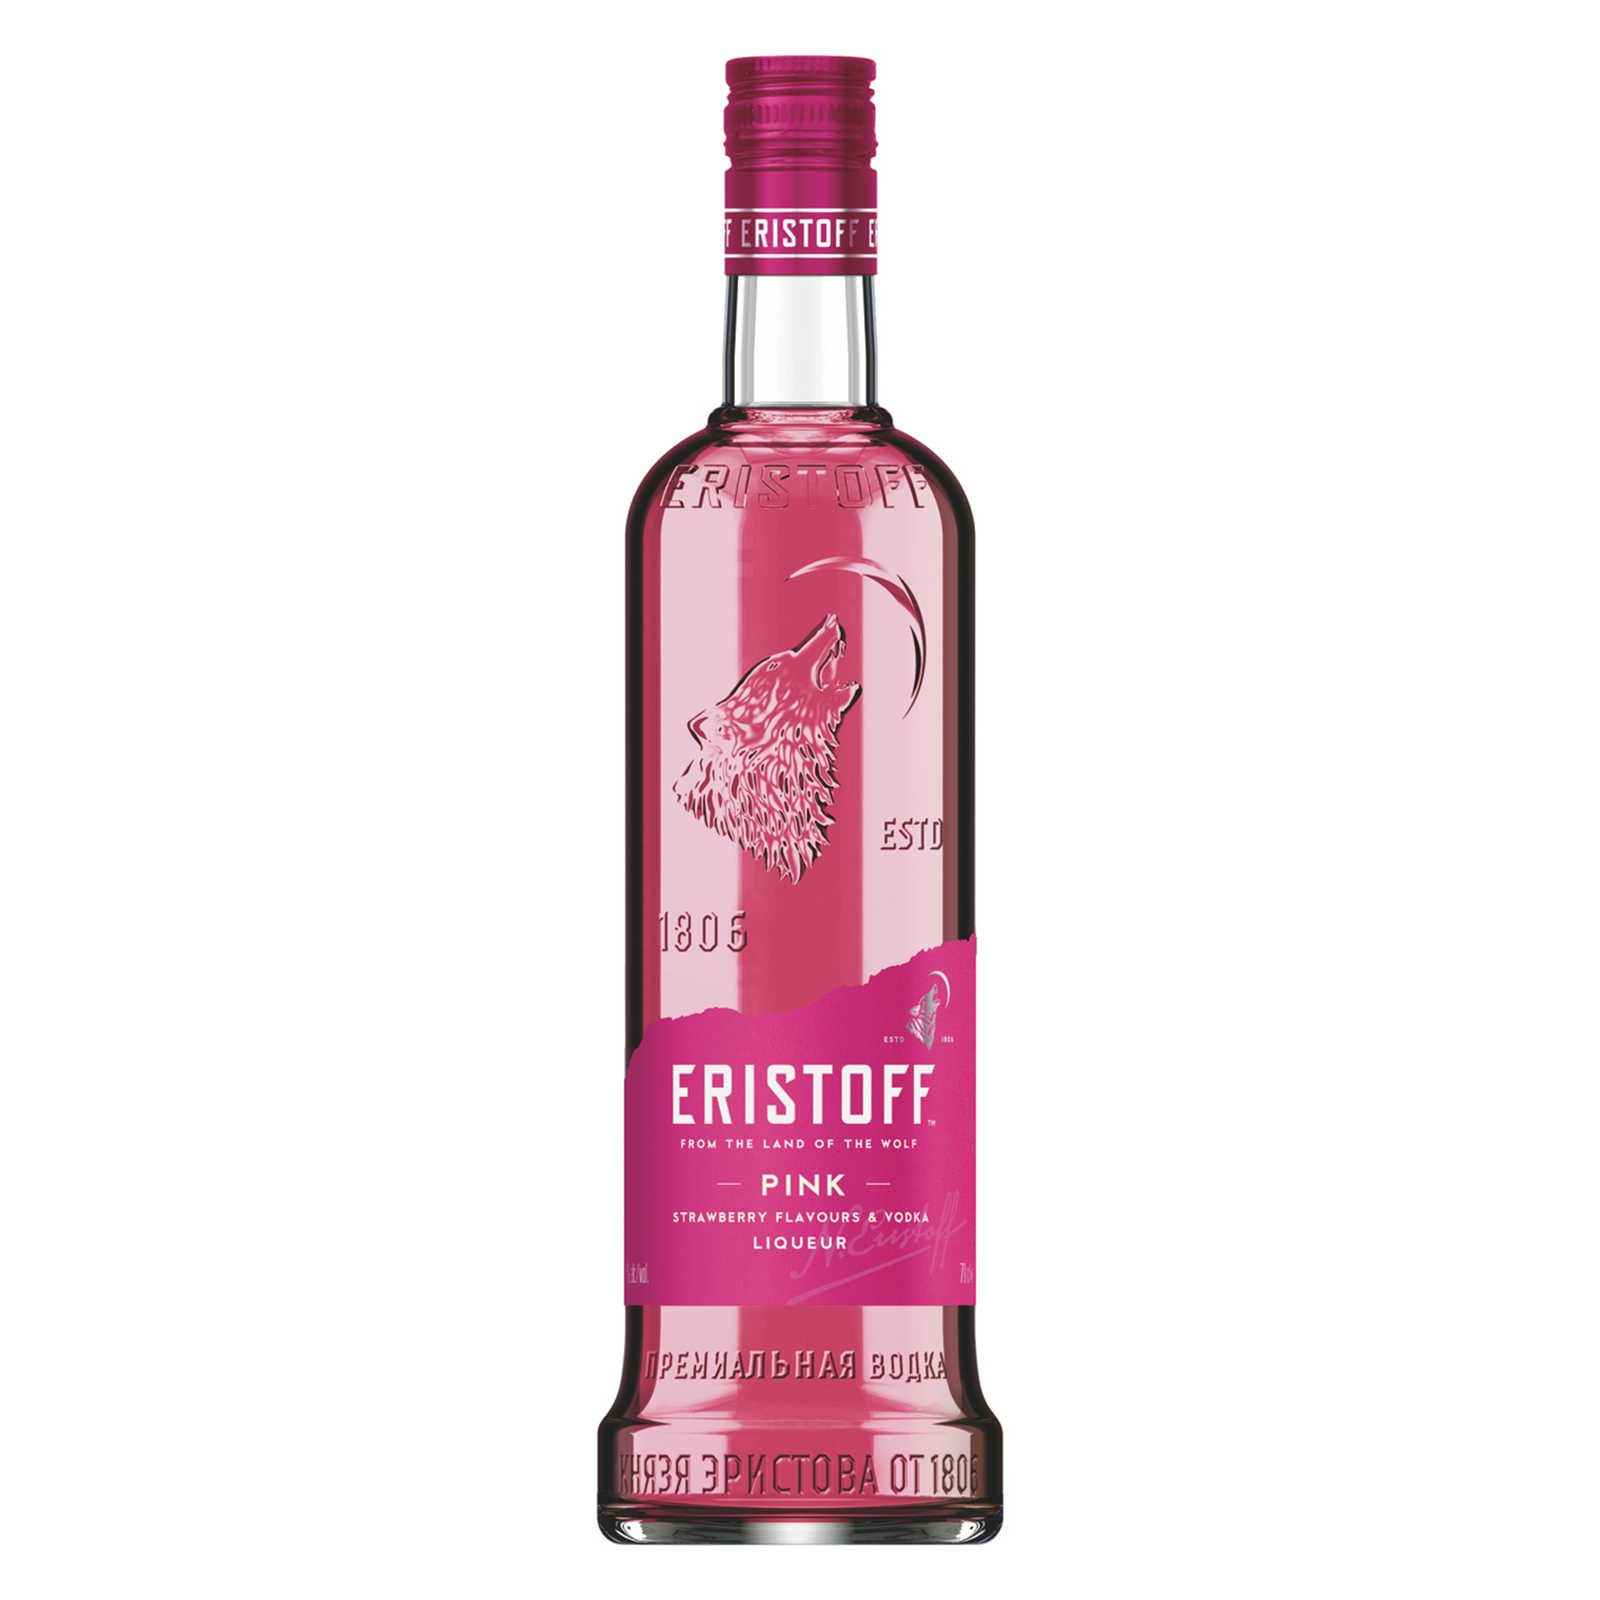 Eristoff Pink Strawberry flavours & vodka liqueur 18% 70cl